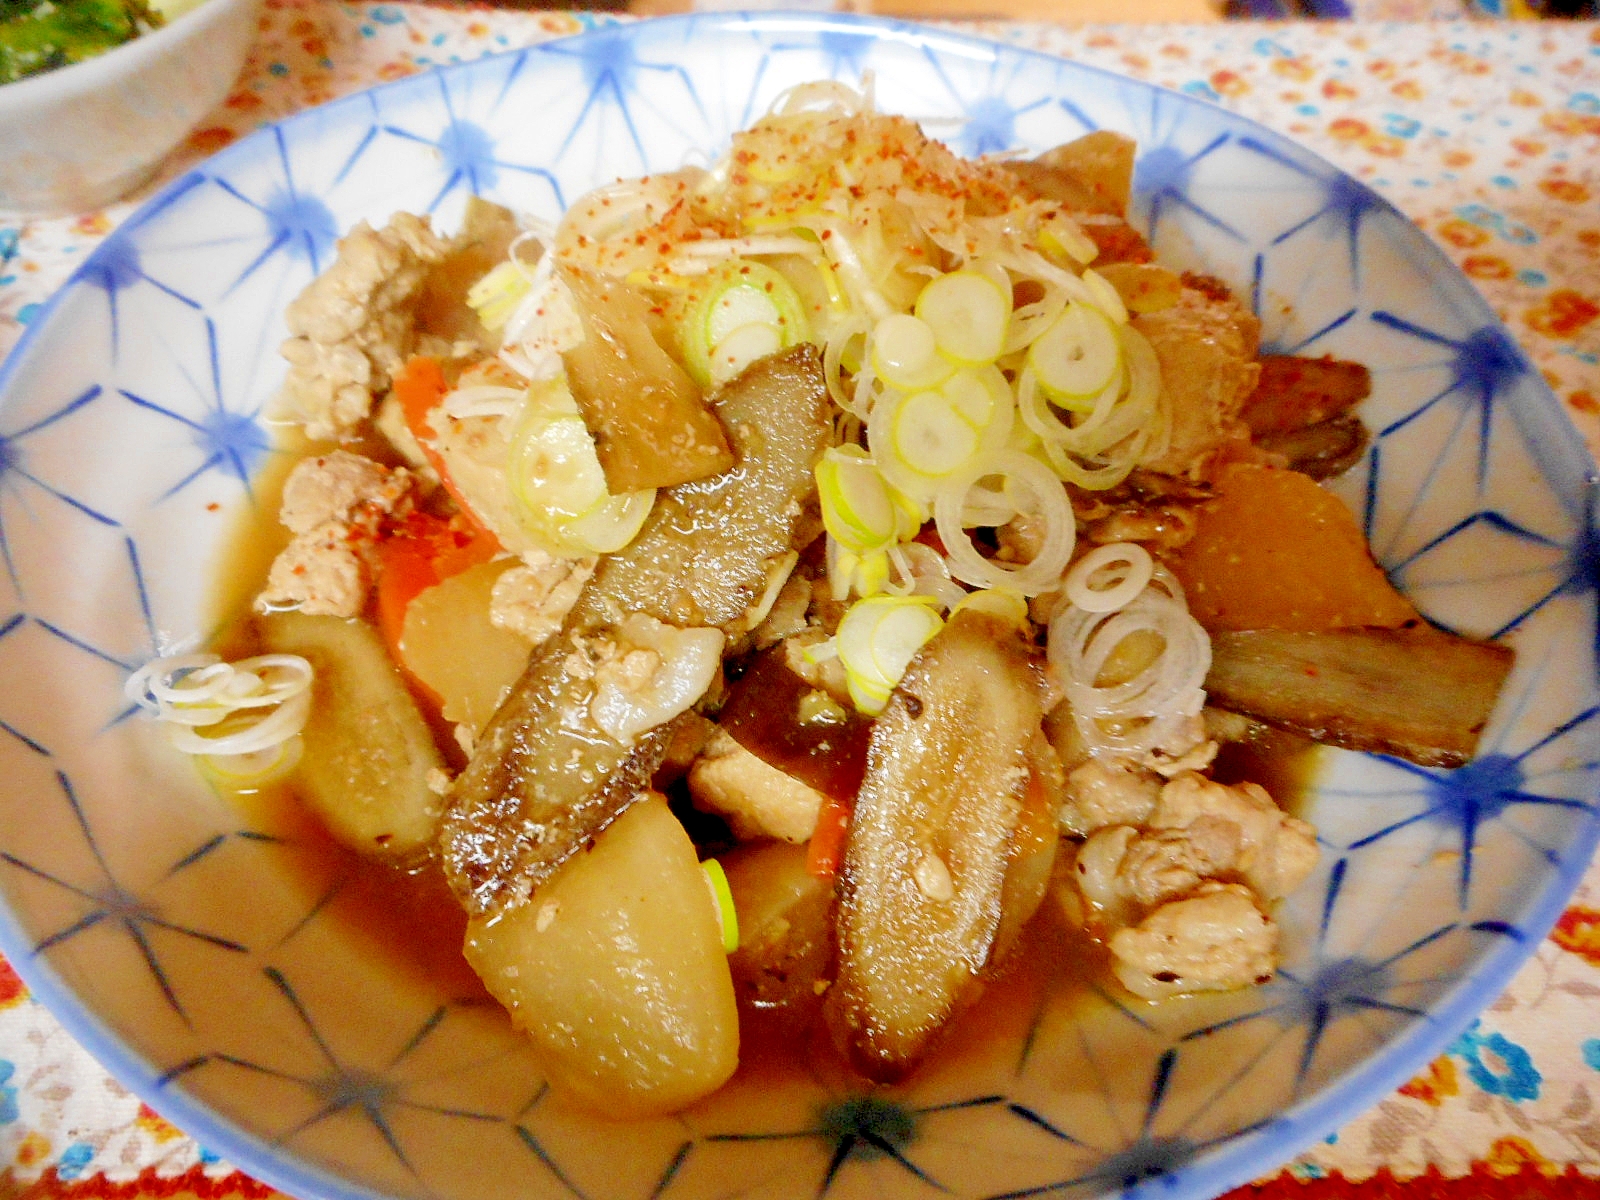 豚コマと高野豆腐と根菜の味噌煮